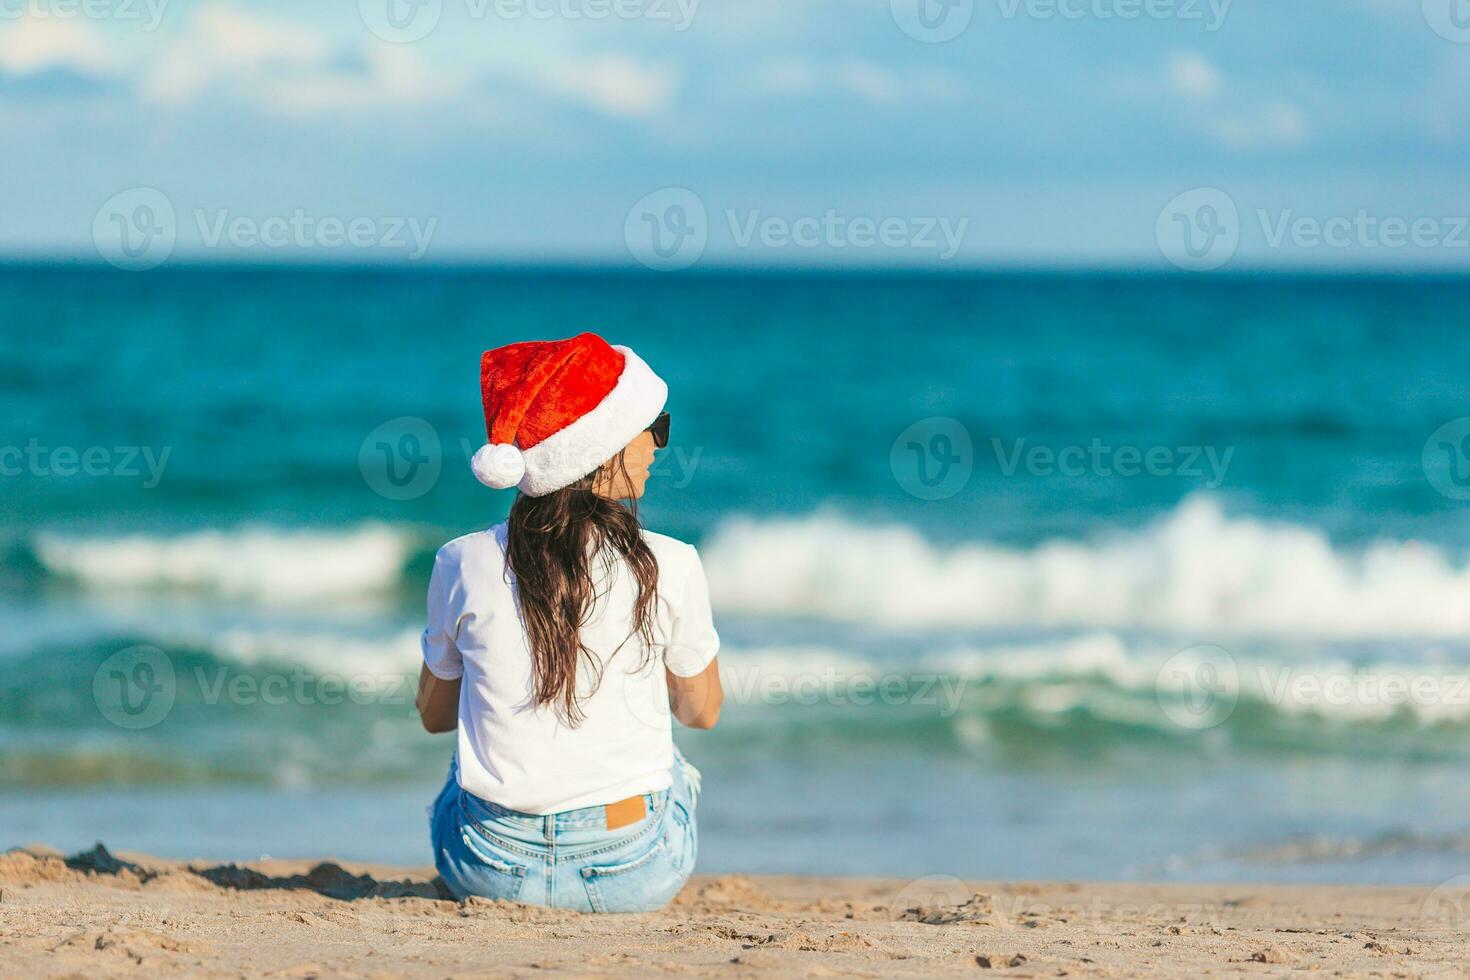 ung kvinna i santa hatt på jul strand högtider foto